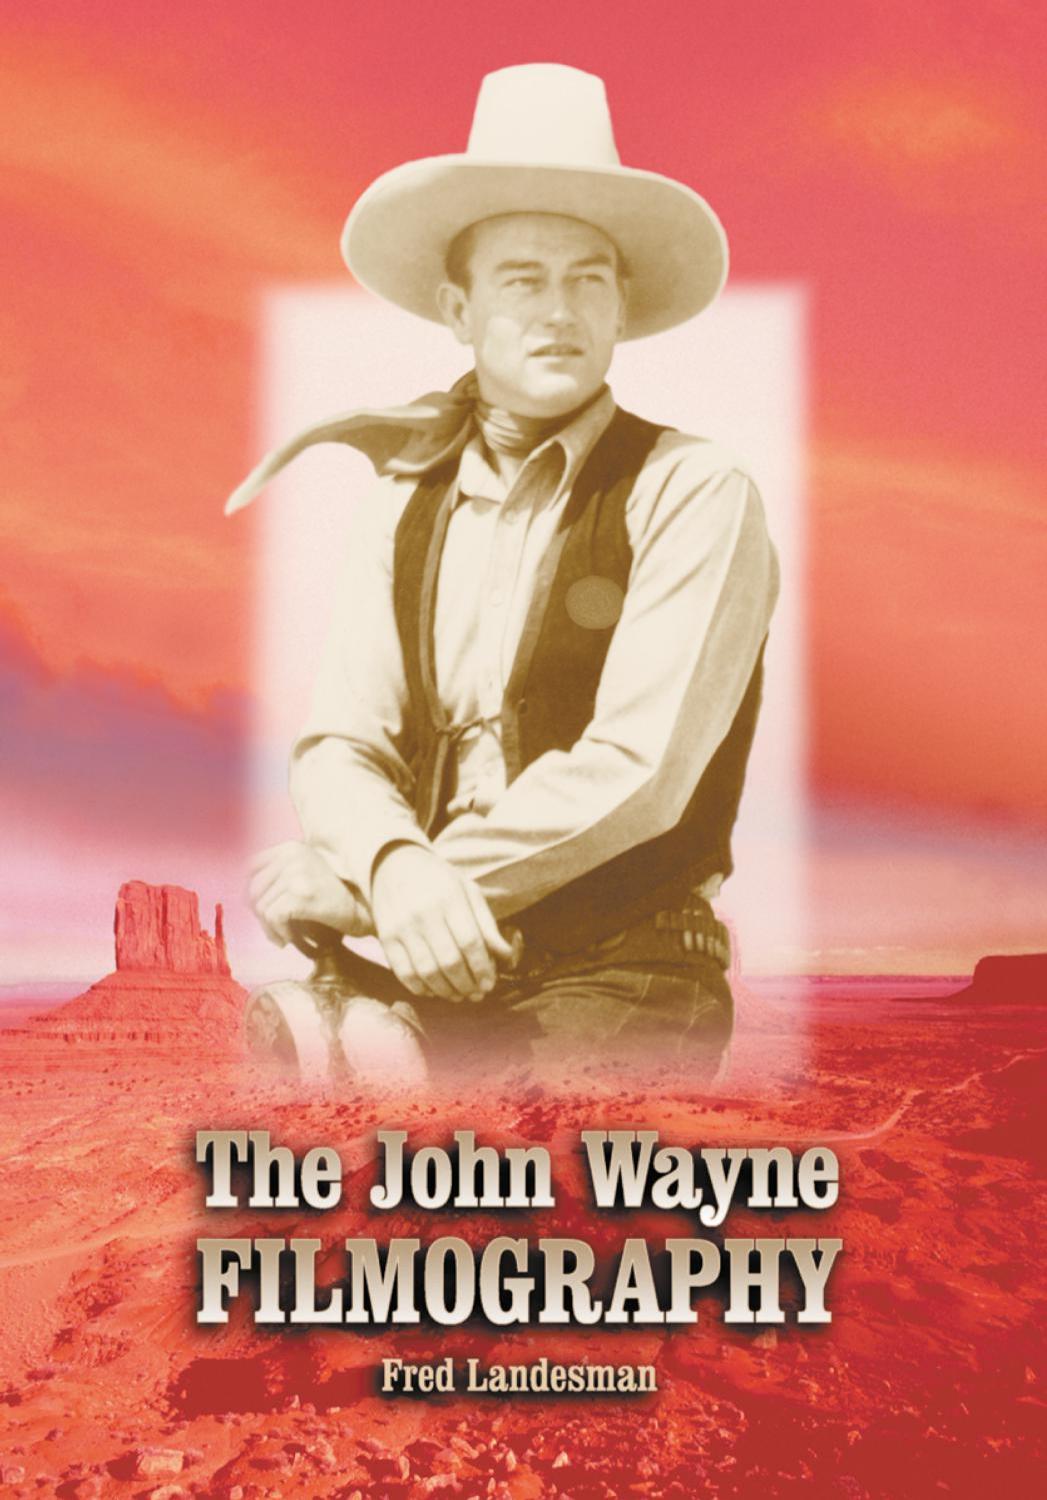 The John Wayne Filmography by Fred Landesman